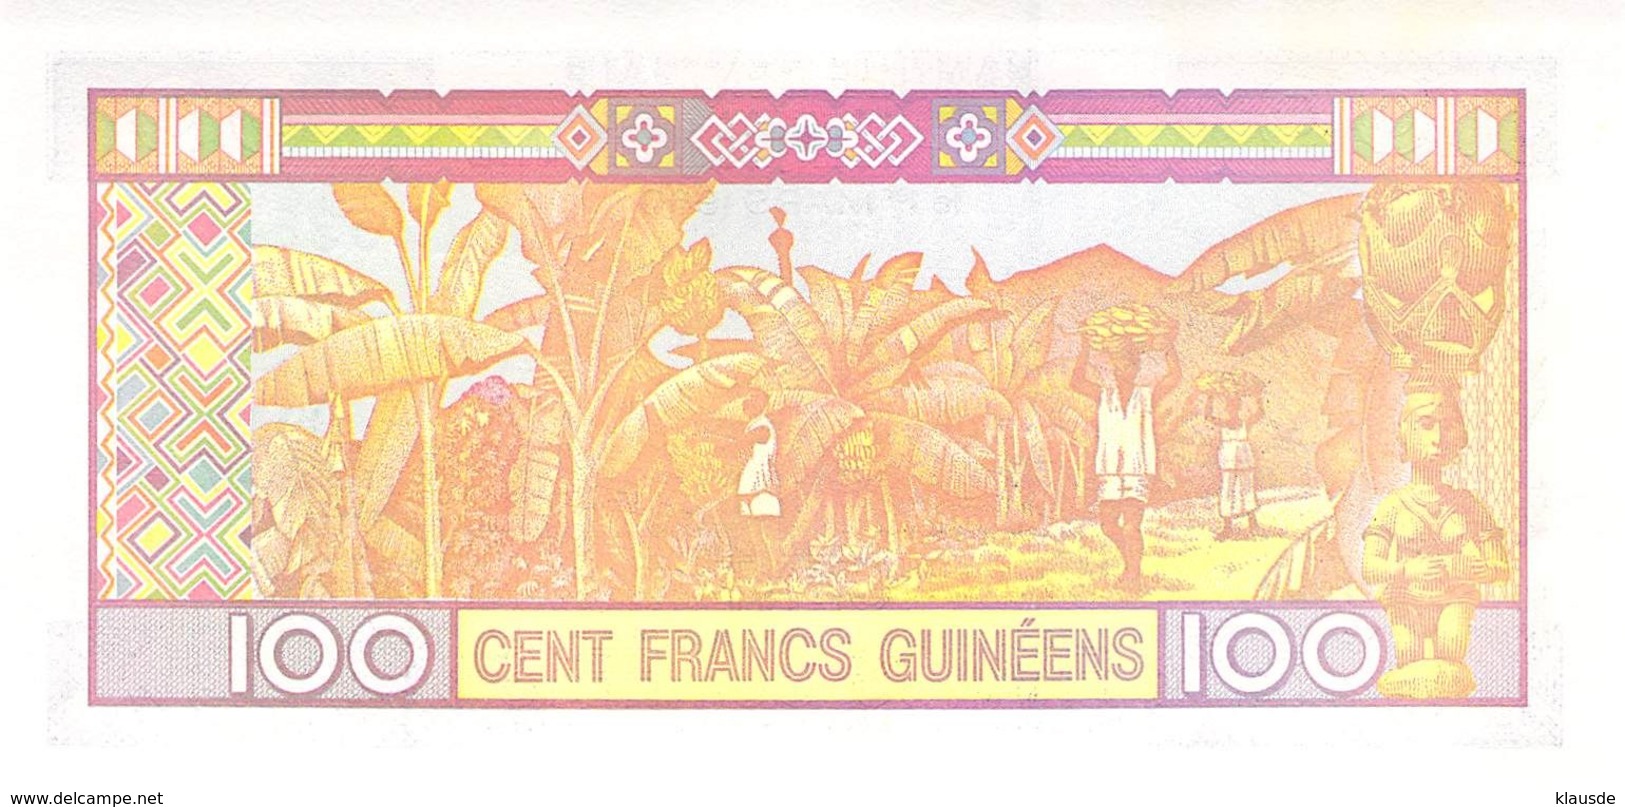 100 Cent Francs Guines 1960 UNC - Guinée